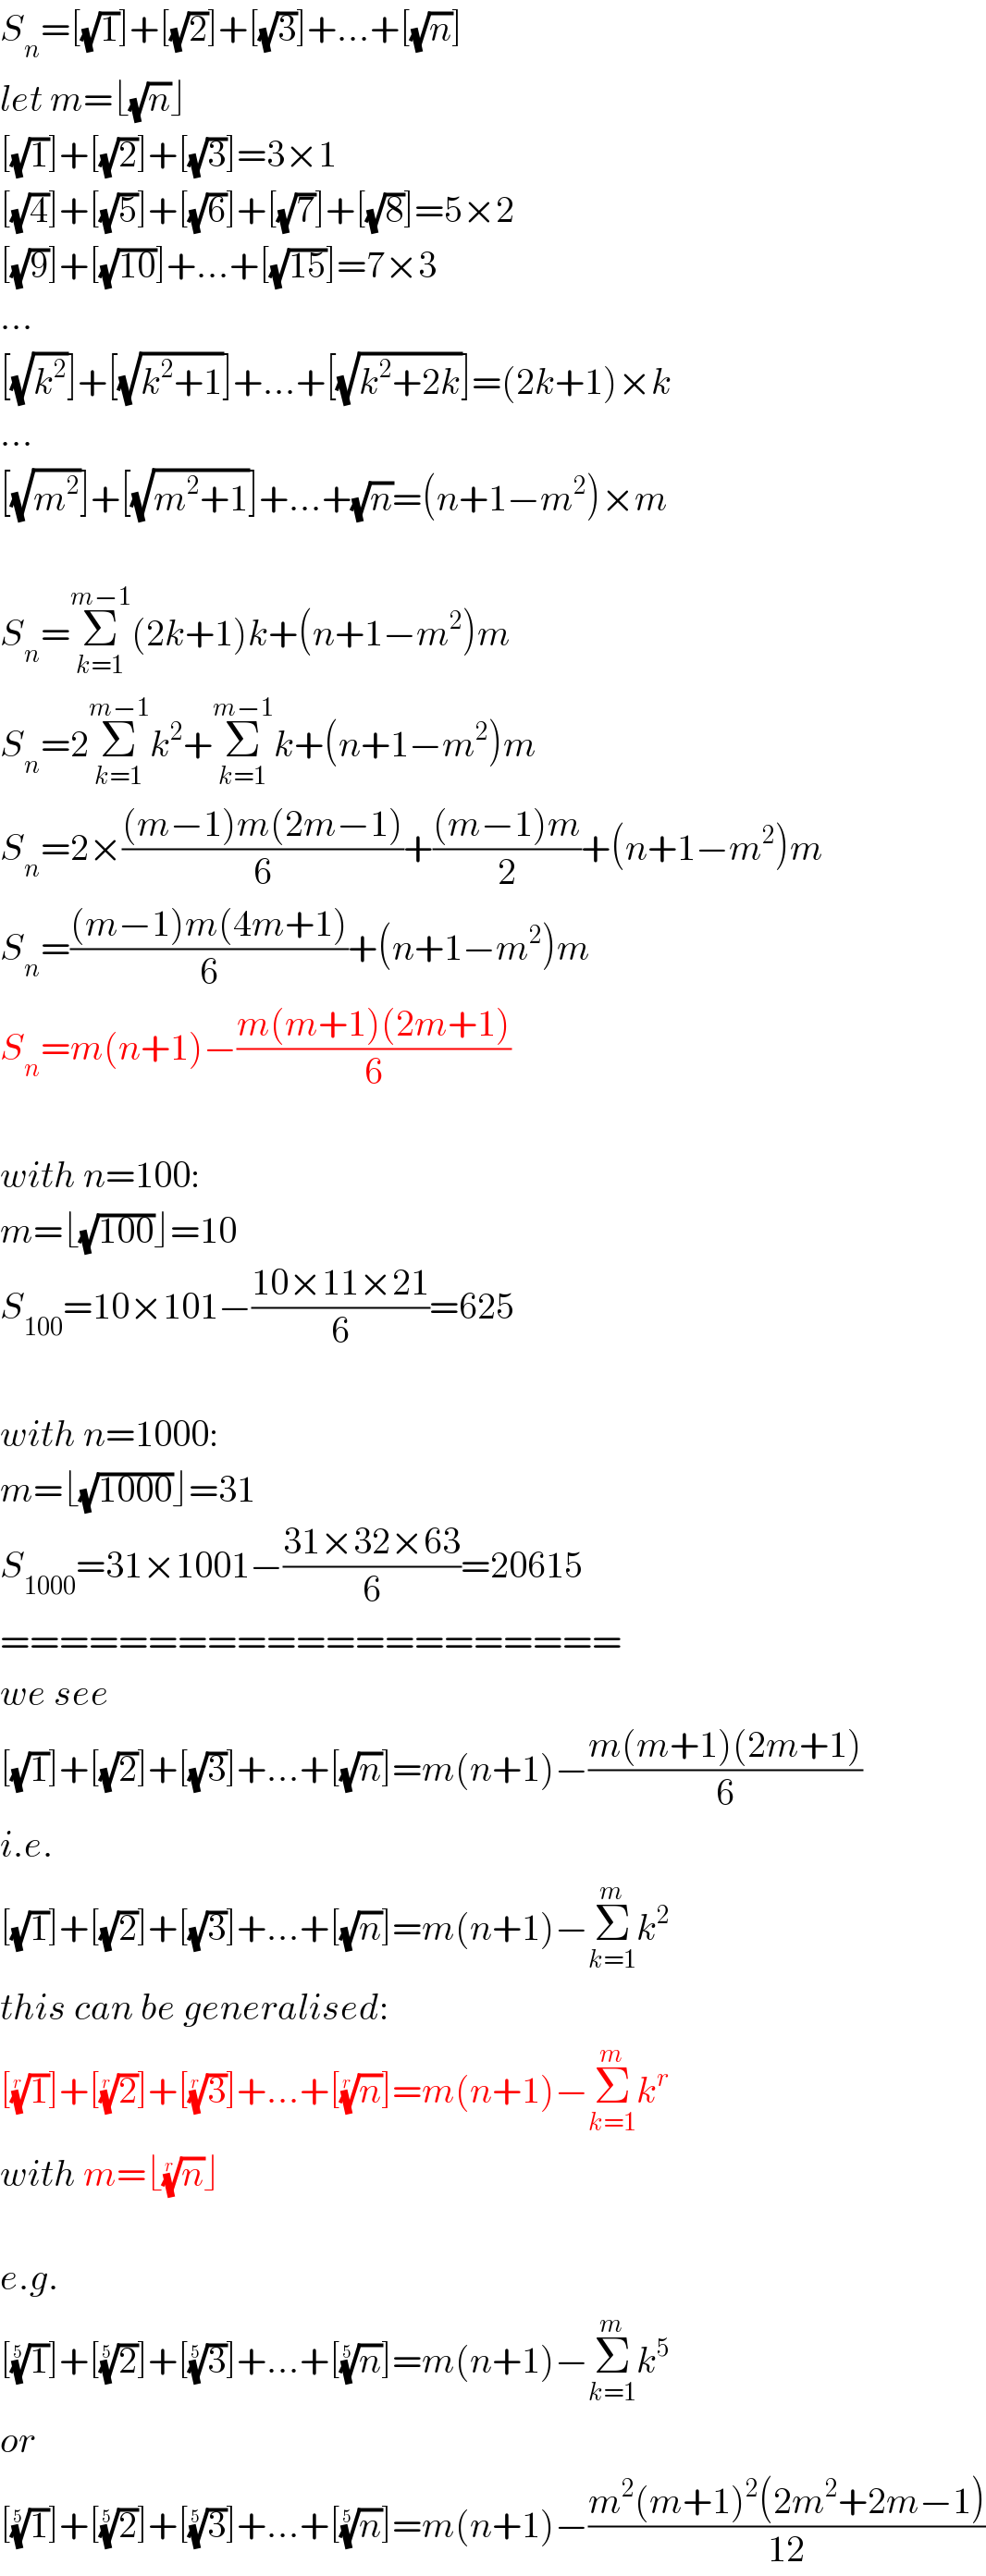 S_n =[(√1)]+[(√2)]+[(√3)]+...+[(√n)]  let m=⌊(√n)⌋  [(√1)]+[(√2)]+[(√3)]=3×1  [(√4)]+[(√5)]+[(√6)]+[(√7)]+[(√8)]=5×2  [(√9)]+[(√(10))]+...+[(√(15))]=7×3  ...  [(√k^2 )]+[(√(k^2 +1))]+...+[(√(k^2 +2k))]=(2k+1)×k  ...  [(√m^2 )]+[(√(m^2 +1))]+...+(√n)=(n+1−m^2 )×m    S_n =Σ_(k=1) ^(m−1) (2k+1)k+(n+1−m^2 )m  S_n =2Σ_(k=1) ^(m−1) k^2 +Σ_(k=1) ^(m−1) k+(n+1−m^2 )m  S_n =2×(((m−1)m(2m−1))/6)+(((m−1)m)/2)+(n+1−m^2 )m  S_n =(((m−1)m(4m+1))/6)+(n+1−m^2 )m  S_n =m(n+1)−((m(m+1)(2m+1))/6)    with n=100:  m=⌊(√(100))⌋=10  S_(100) =10×101−((10×11×21)/6)=625    with n=1000:  m=⌊(√(1000))⌋=31  S_(1000) =31×1001−((31×32×63)/6)=20615  =====================  we see  [(√1)]+[(√2)]+[(√3)]+...+[(√n)]=m(n+1)−((m(m+1)(2m+1))/6)  i.e.   [(√1)]+[(√2)]+[(√3)]+...+[(√n)]=m(n+1)−Σ_(k=1) ^m k^2   this can be generalised:  [(1)^(1/r) ]+[(2)^(1/r) ]+[(3)^(1/r) ]+...+[(n)^(1/r) ]=m(n+1)−Σ_(k=1) ^m k^r   with m=⌊(n)^(1/r) ⌋    e.g.  [(1)^(1/5) ]+[(2)^(1/5) ]+[(3)^(1/5) ]+...+[(n)^(1/5) ]=m(n+1)−Σ_(k=1) ^m k^5   or  [(1)^(1/5) ]+[(2)^(1/5) ]+[(3)^(1/5) ]+...+[(n)^(1/5) ]=m(n+1)−((m^2 (m+1)^2 (2m^2 +2m−1))/(12))  